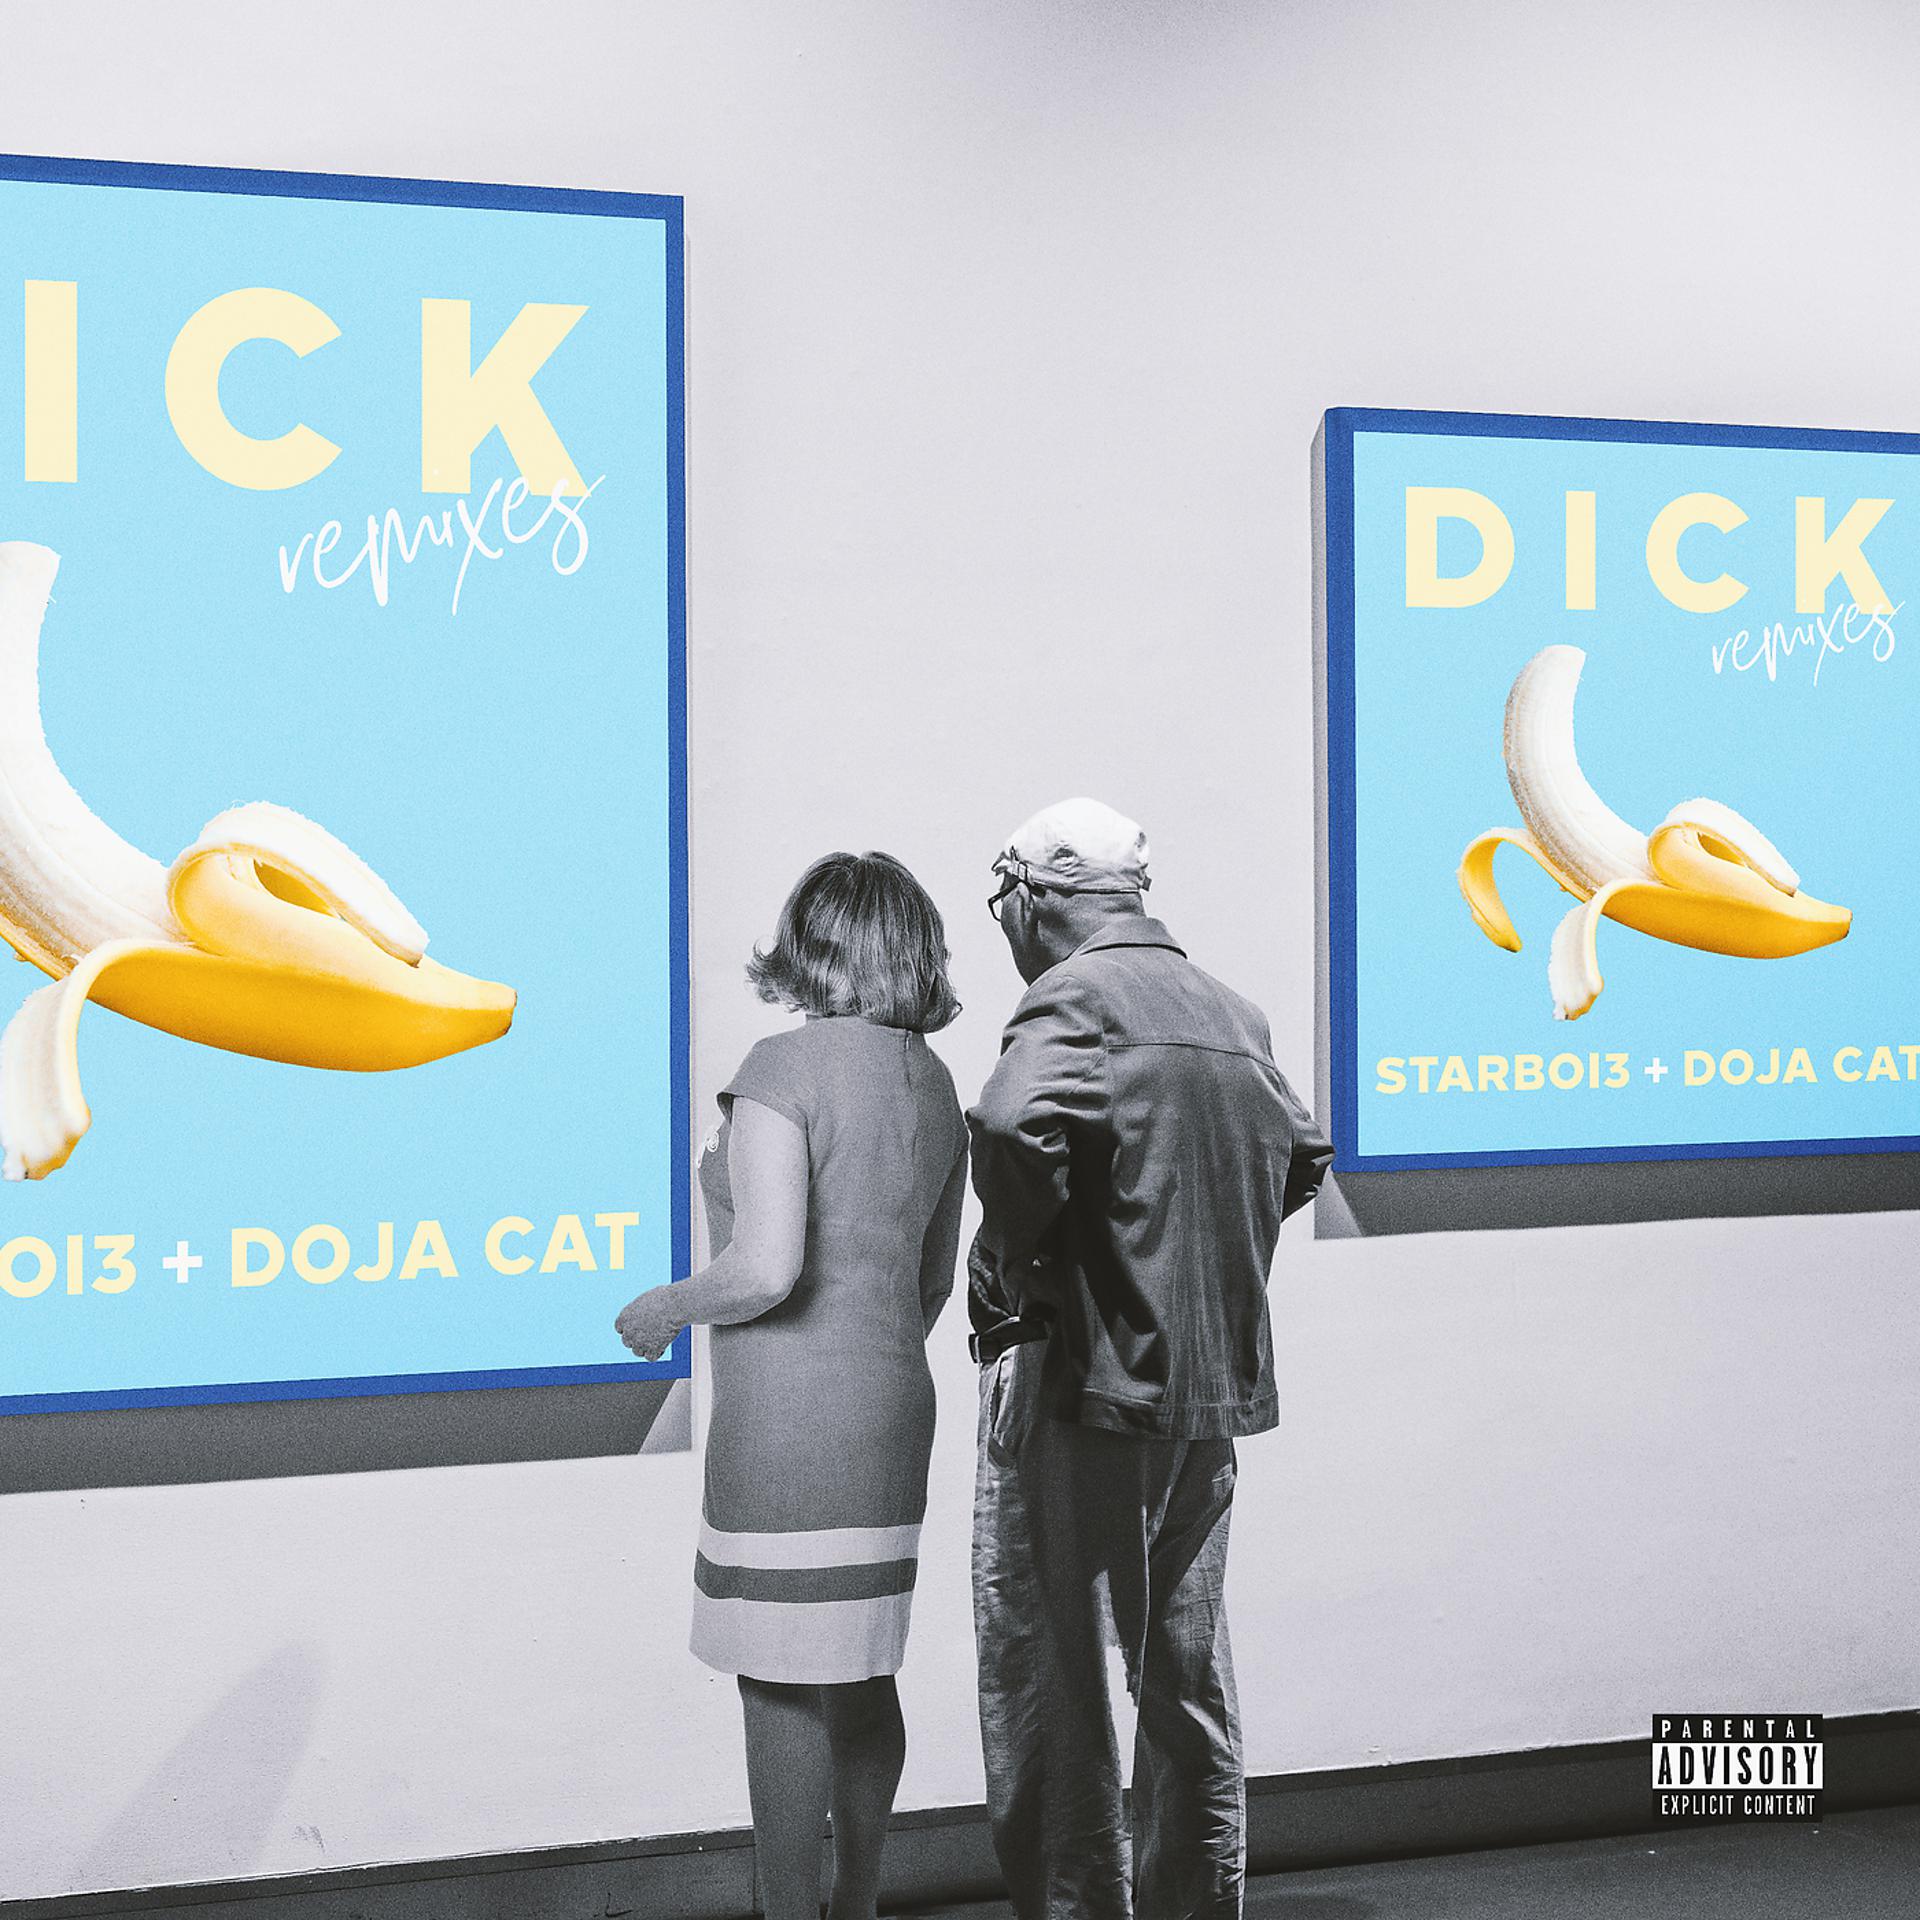 Dick Doja Cat. Dick starboi3, Doja Cat. Starboi3 feat. Doja Cat. Dick feat Doja Cat. Песня dick men перевод